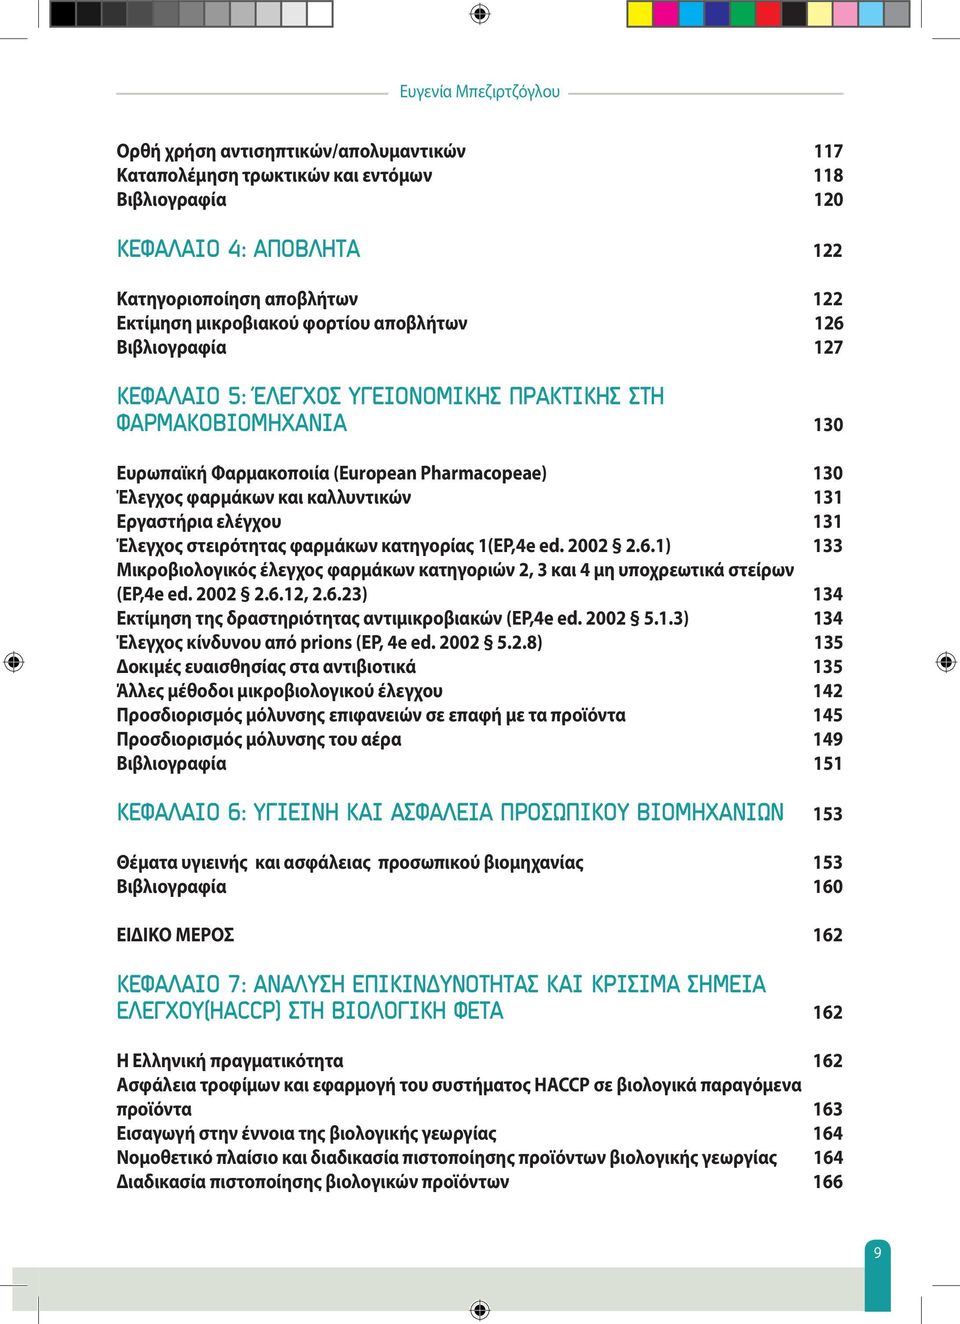 Εργαστήρια ελέγχου 131 Έλεγχος στειρότητας φαρμάκων κατηγορίας 1(EP,4e ed. 2002 2.6.1) 133 Μικροβιολογικός έλεγχος φαρμάκων κατηγοριών 2, 3 και 4 μη υποχρεωτικά στείρων (EP,4e ed. 2002 2.6.12, 2.6.23) 134 Εκτίμηση της δραστηριότητας αντιμικροβιακών (EP,4e ed.